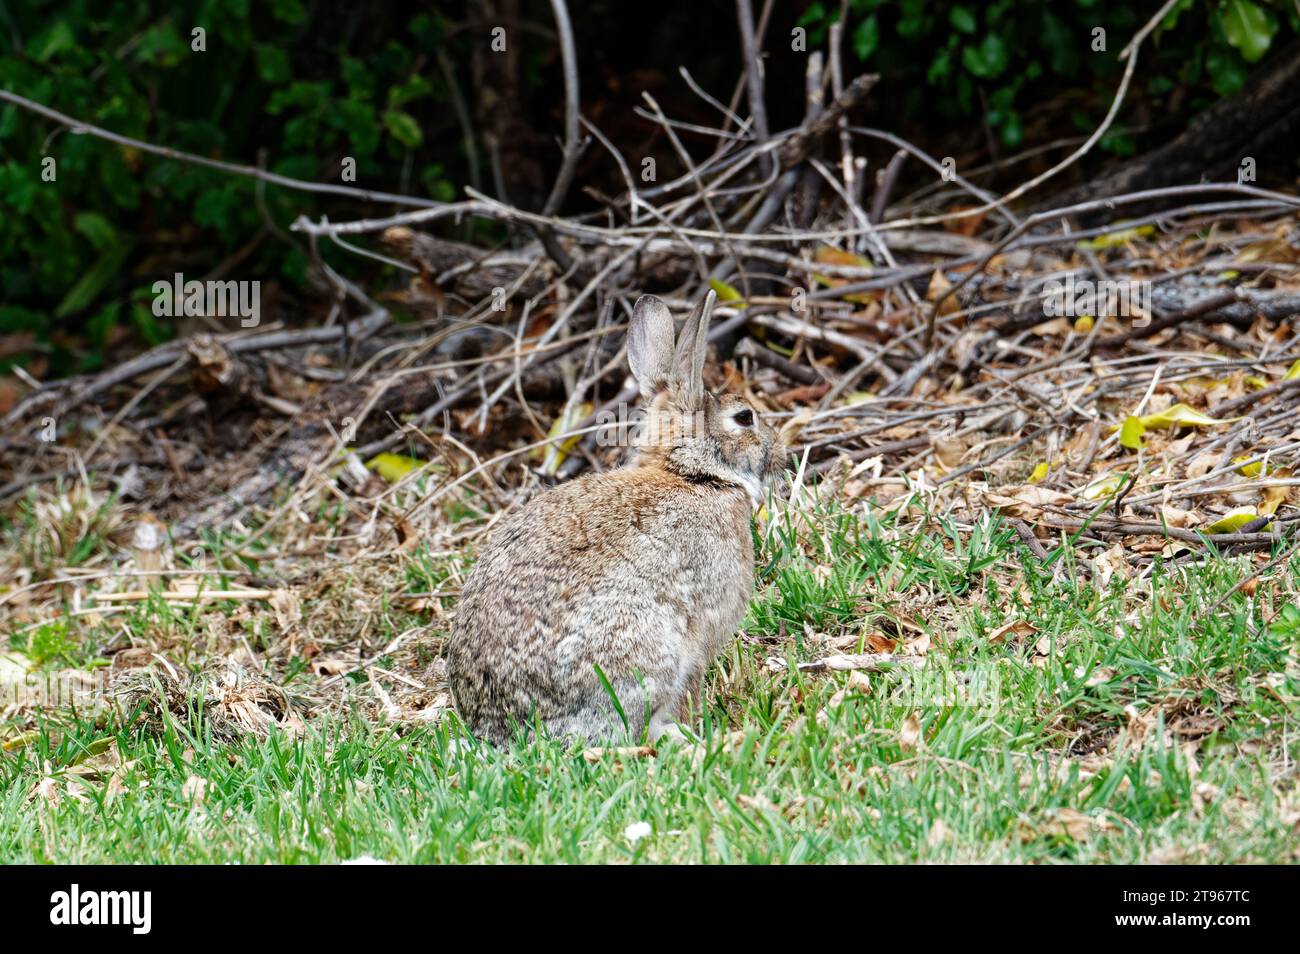 Un jeune lapin alerte semble être sur le point de sauter Banque D'Images